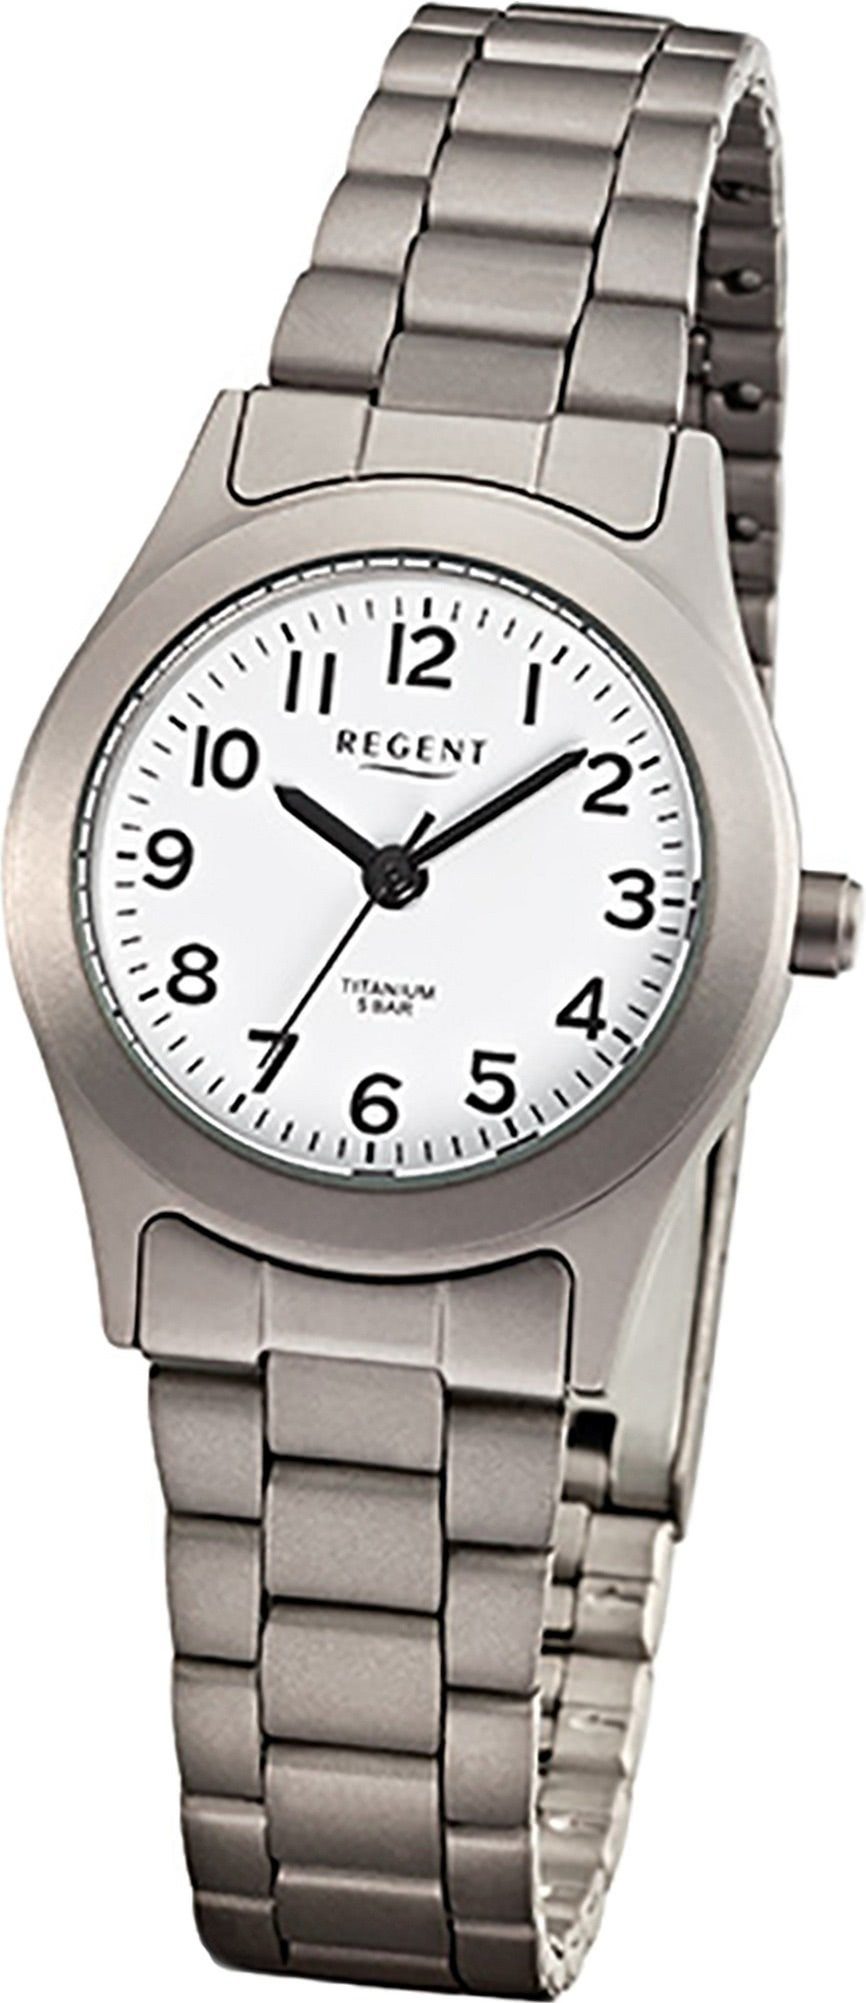 Regent Quarzuhr Regent Titan (Metall) Damen Uhr F-855, Damenuhr mit Titanarmband, rundes Gehäuse, klein (ca. 26mm), Elegant-S